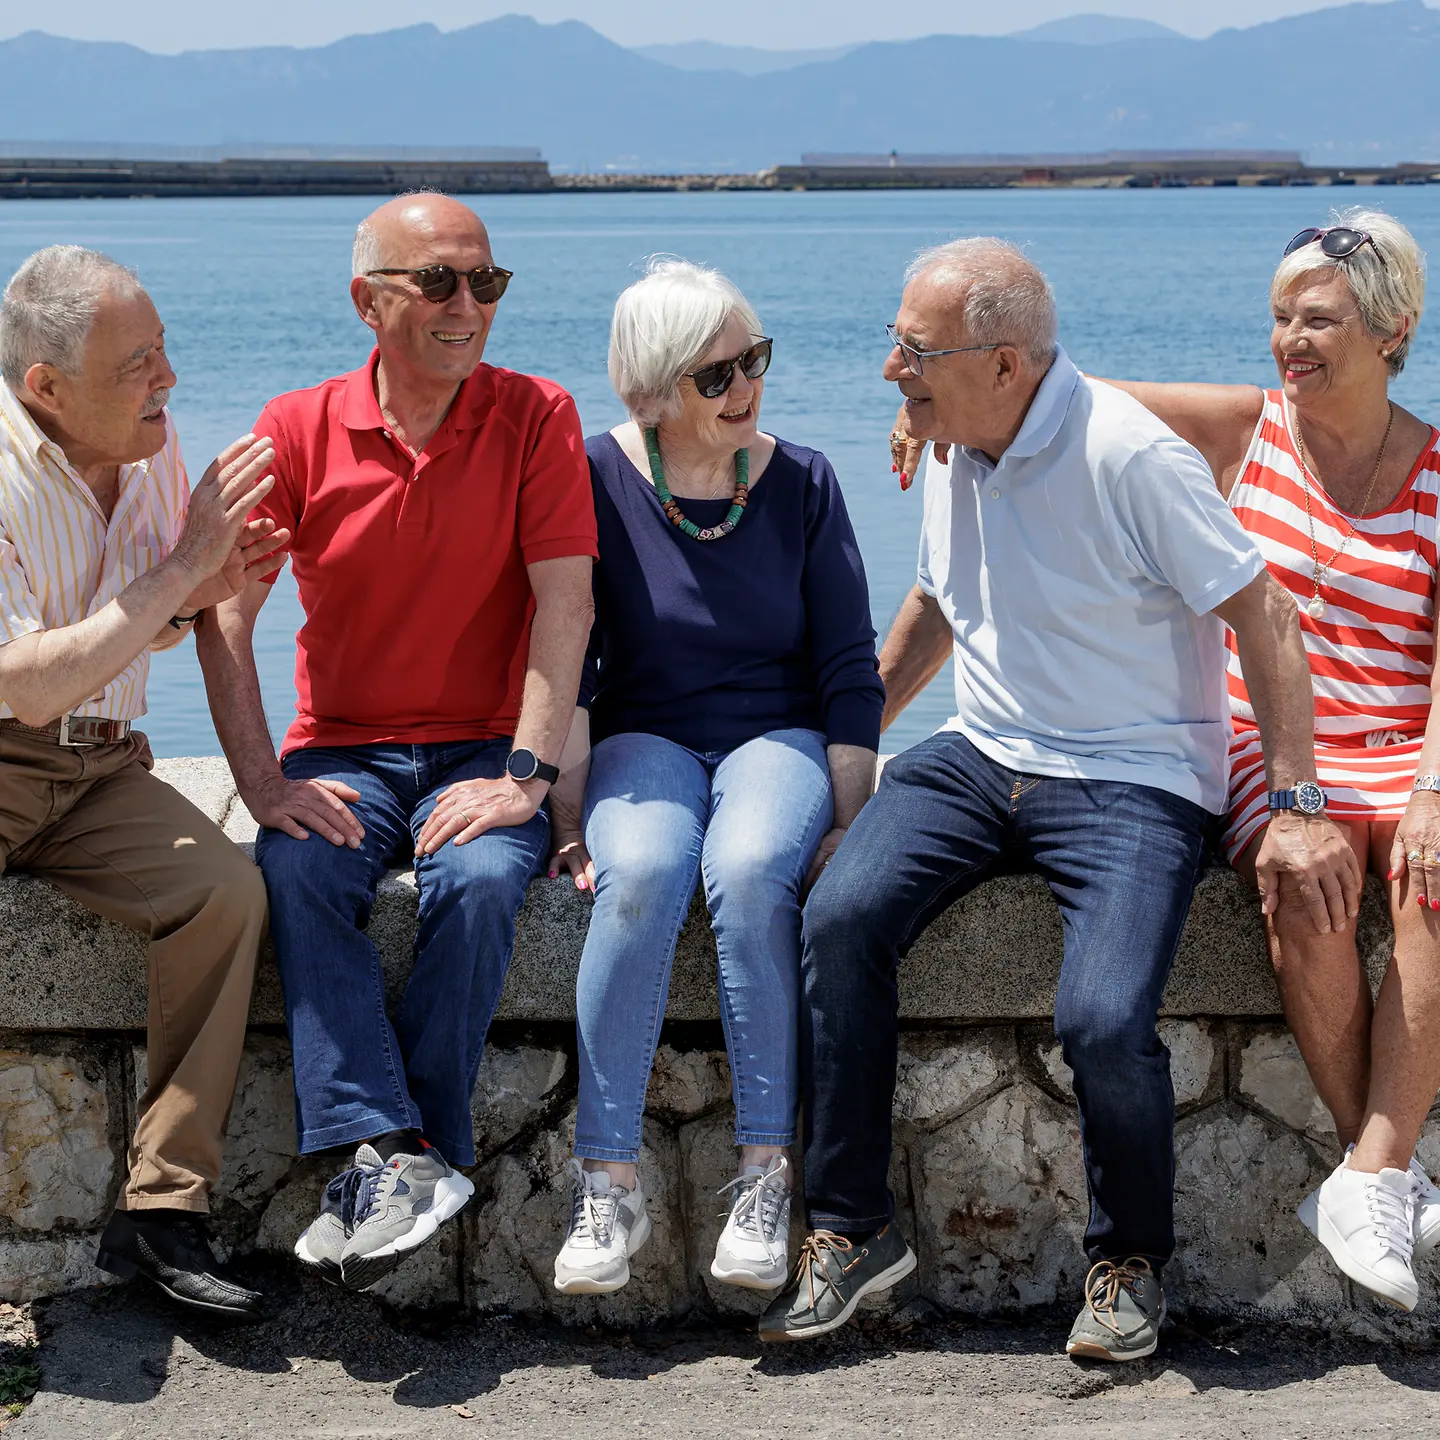 Zu sehen sind fünf ältere Personen, die auf einer Mauer am Meer sitzen